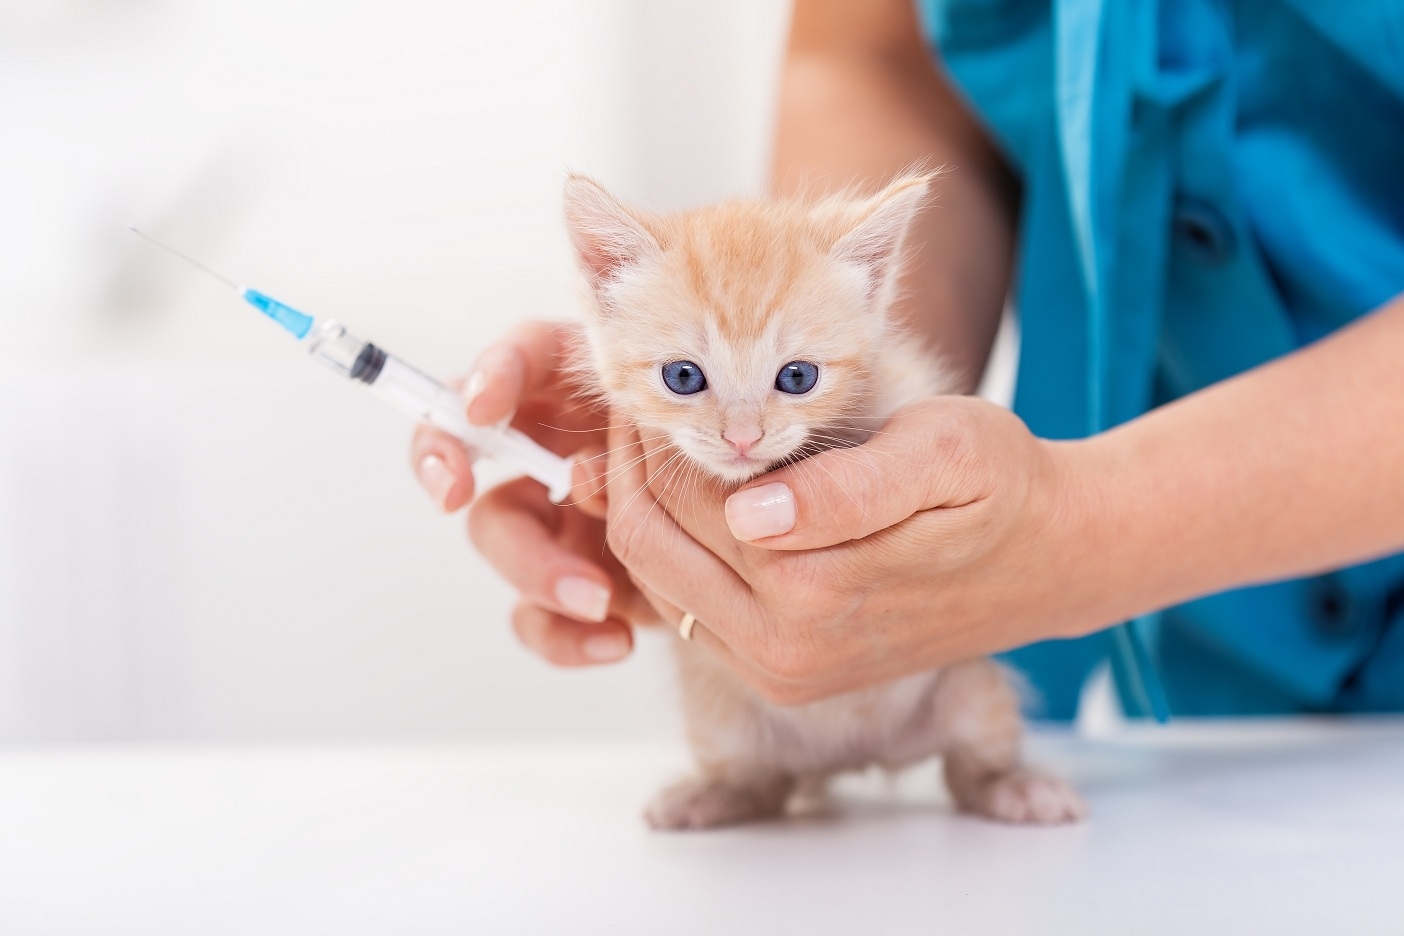 Бесплатные прививки для кошек в москве. Вакцинация кошек. Вакцинирование кошек. Прививка котенку. Прививки для кошек.